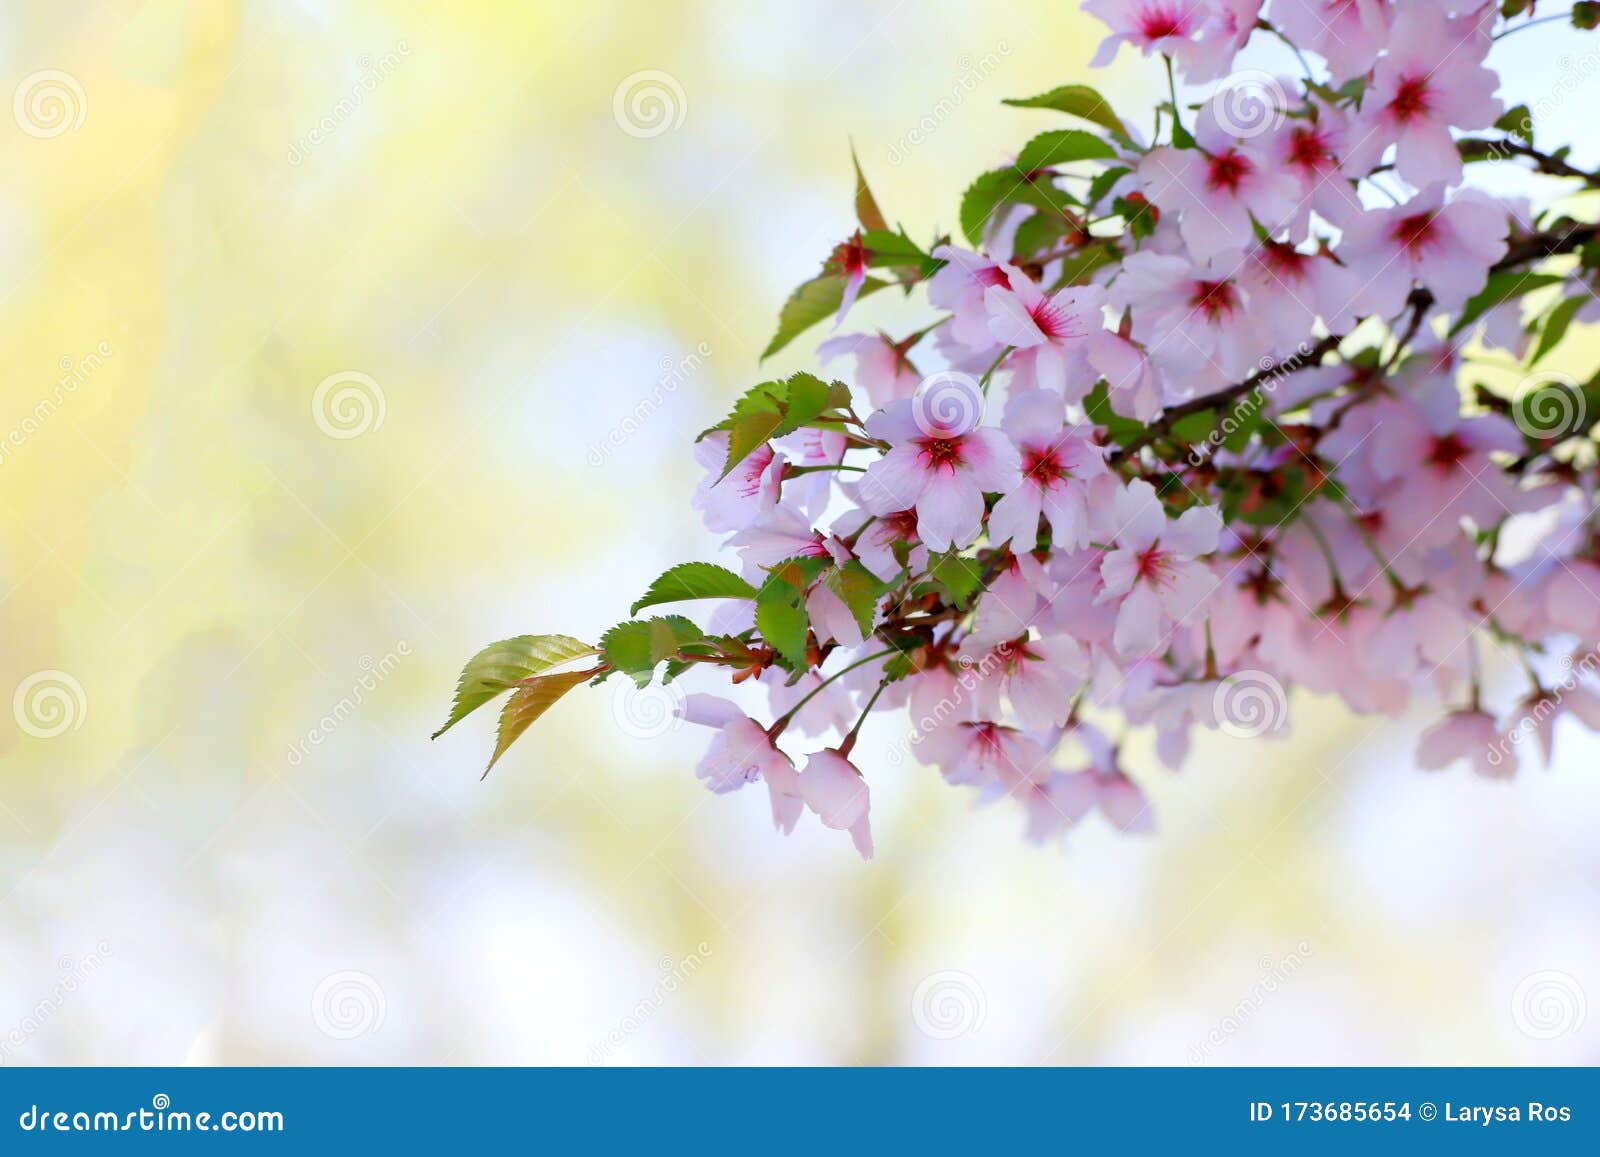 Фото успокаивающего сада цветов вишни с нежными лепестками, падающими g мирные пейзажи спокойствие